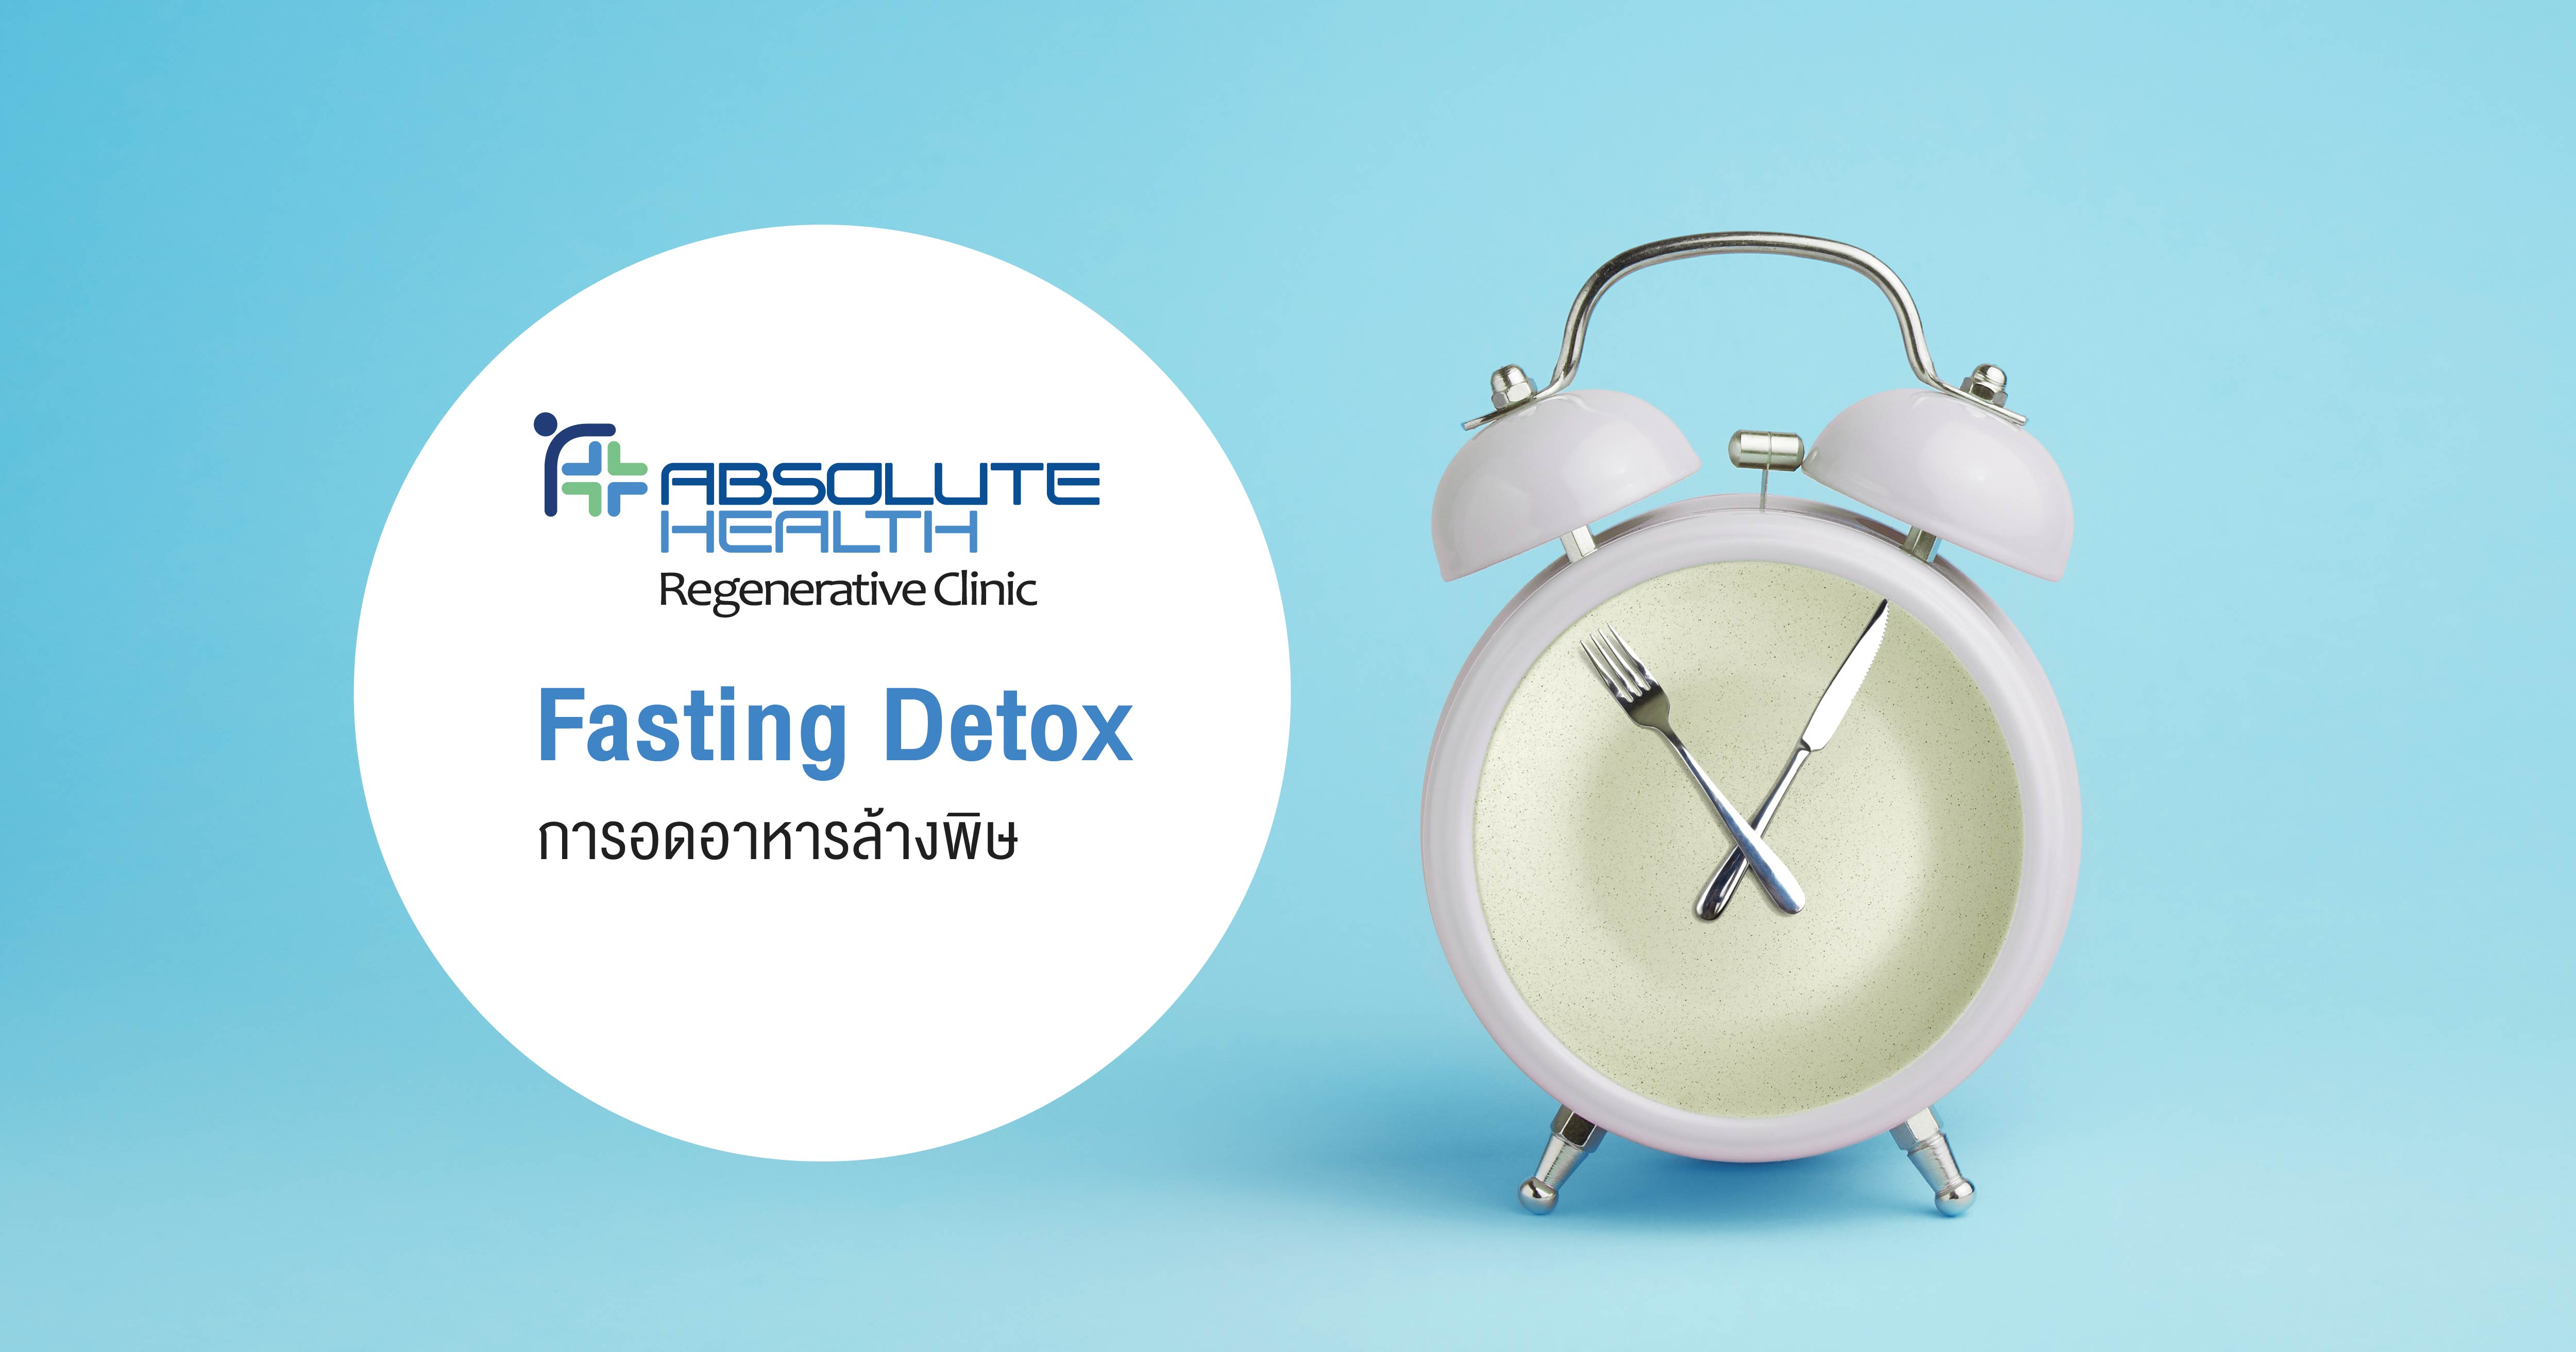 الرجيم أو حمية الصيام المتقطع (Fasting Detox) وهو الامتناع عن الأكل للتخلص من السموم